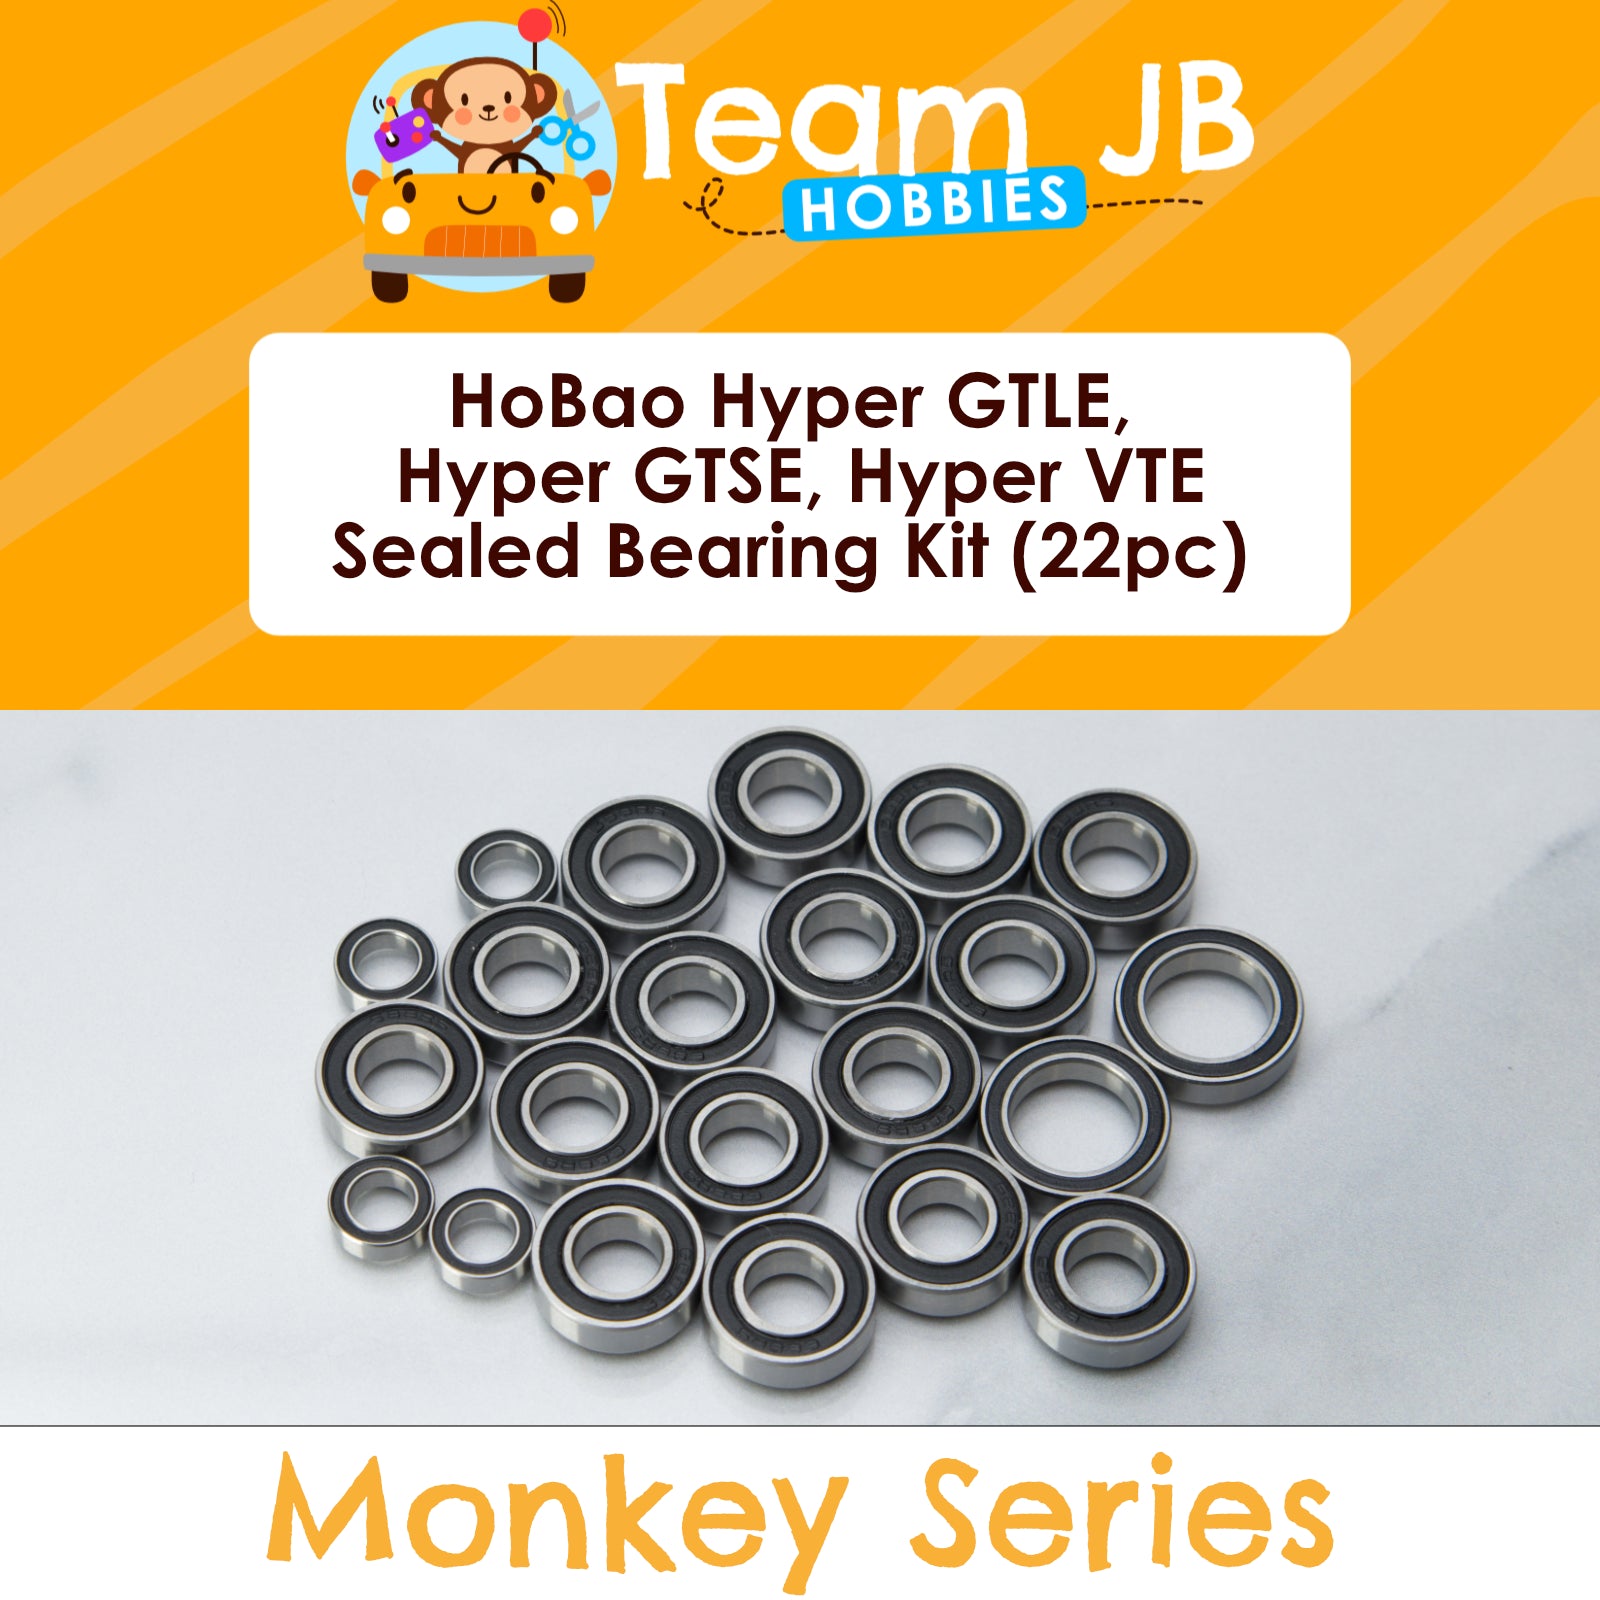 HoBao Hyper GTLE, Hyper GTSE, Hyper VTE - Sealed Bearing Kit